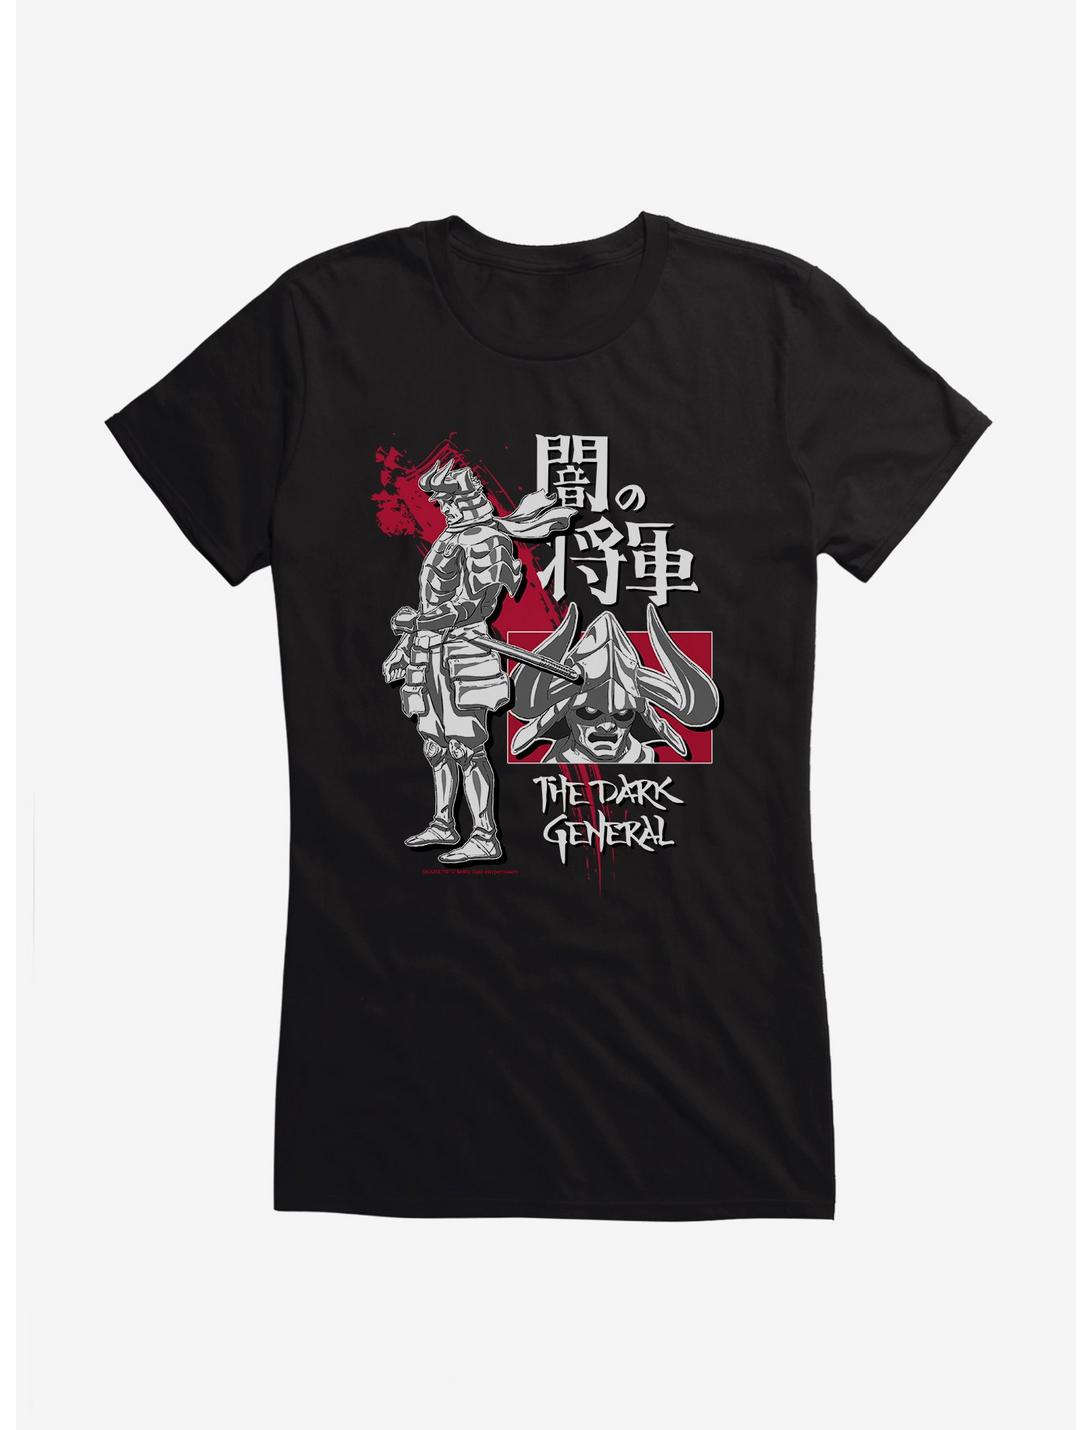 Yasuke The Dark General Collage Girls T-Shirt, , hi-res